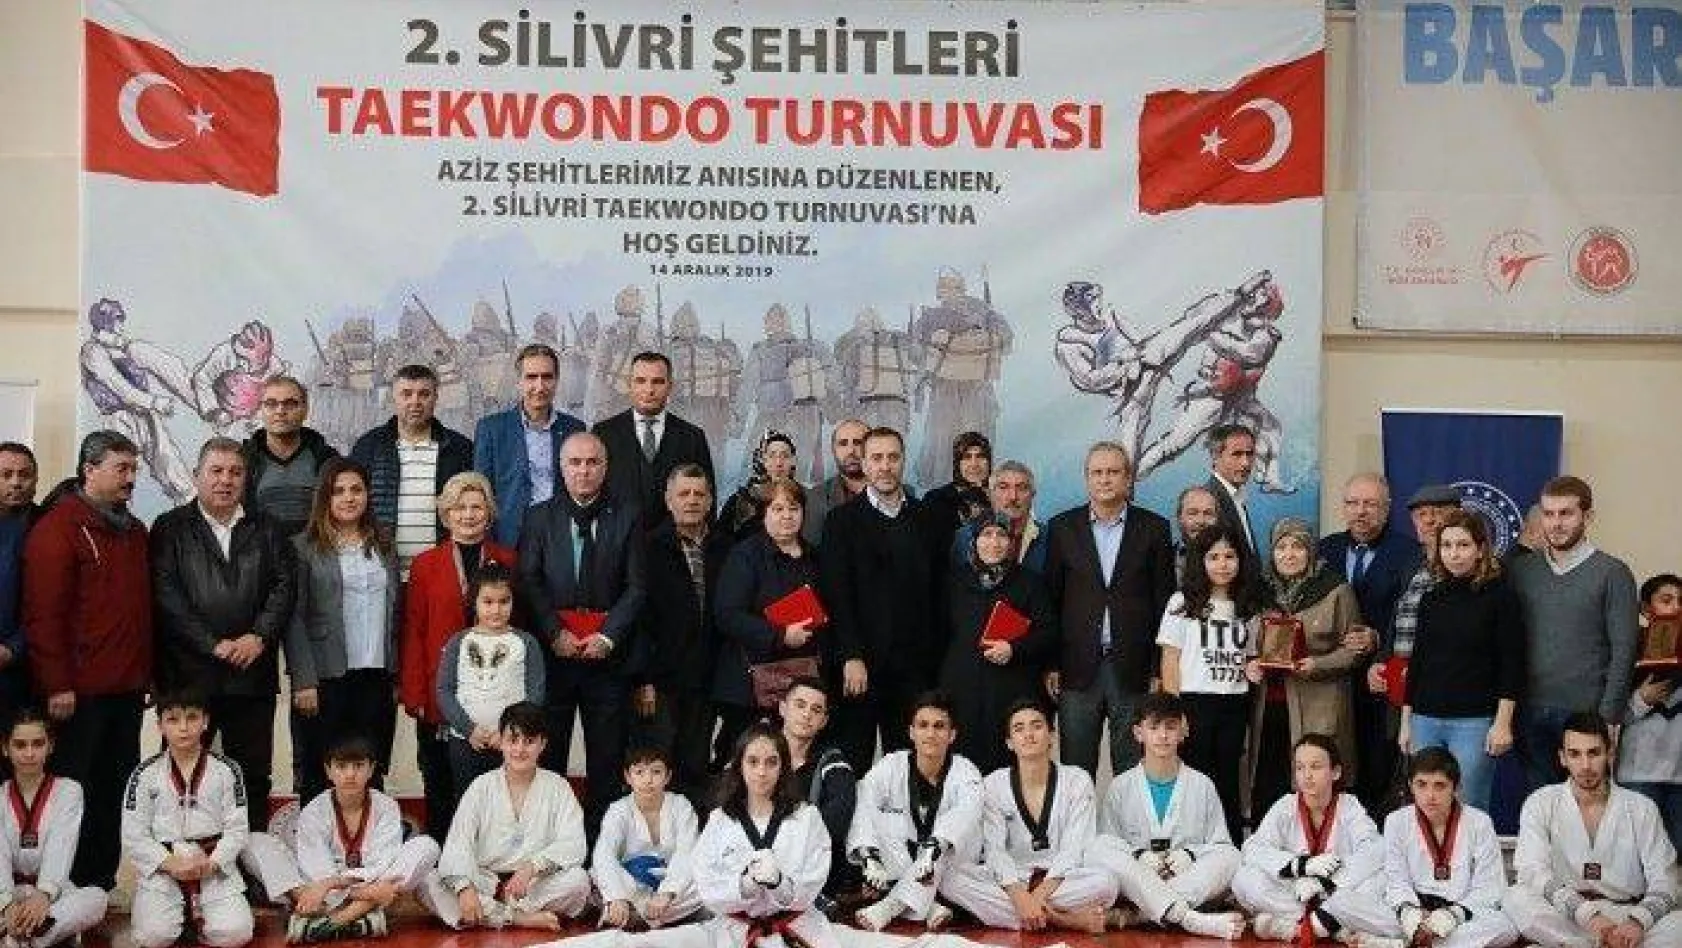 Şehitler Anısına Taekwondo Turnuvası Düzenlendi